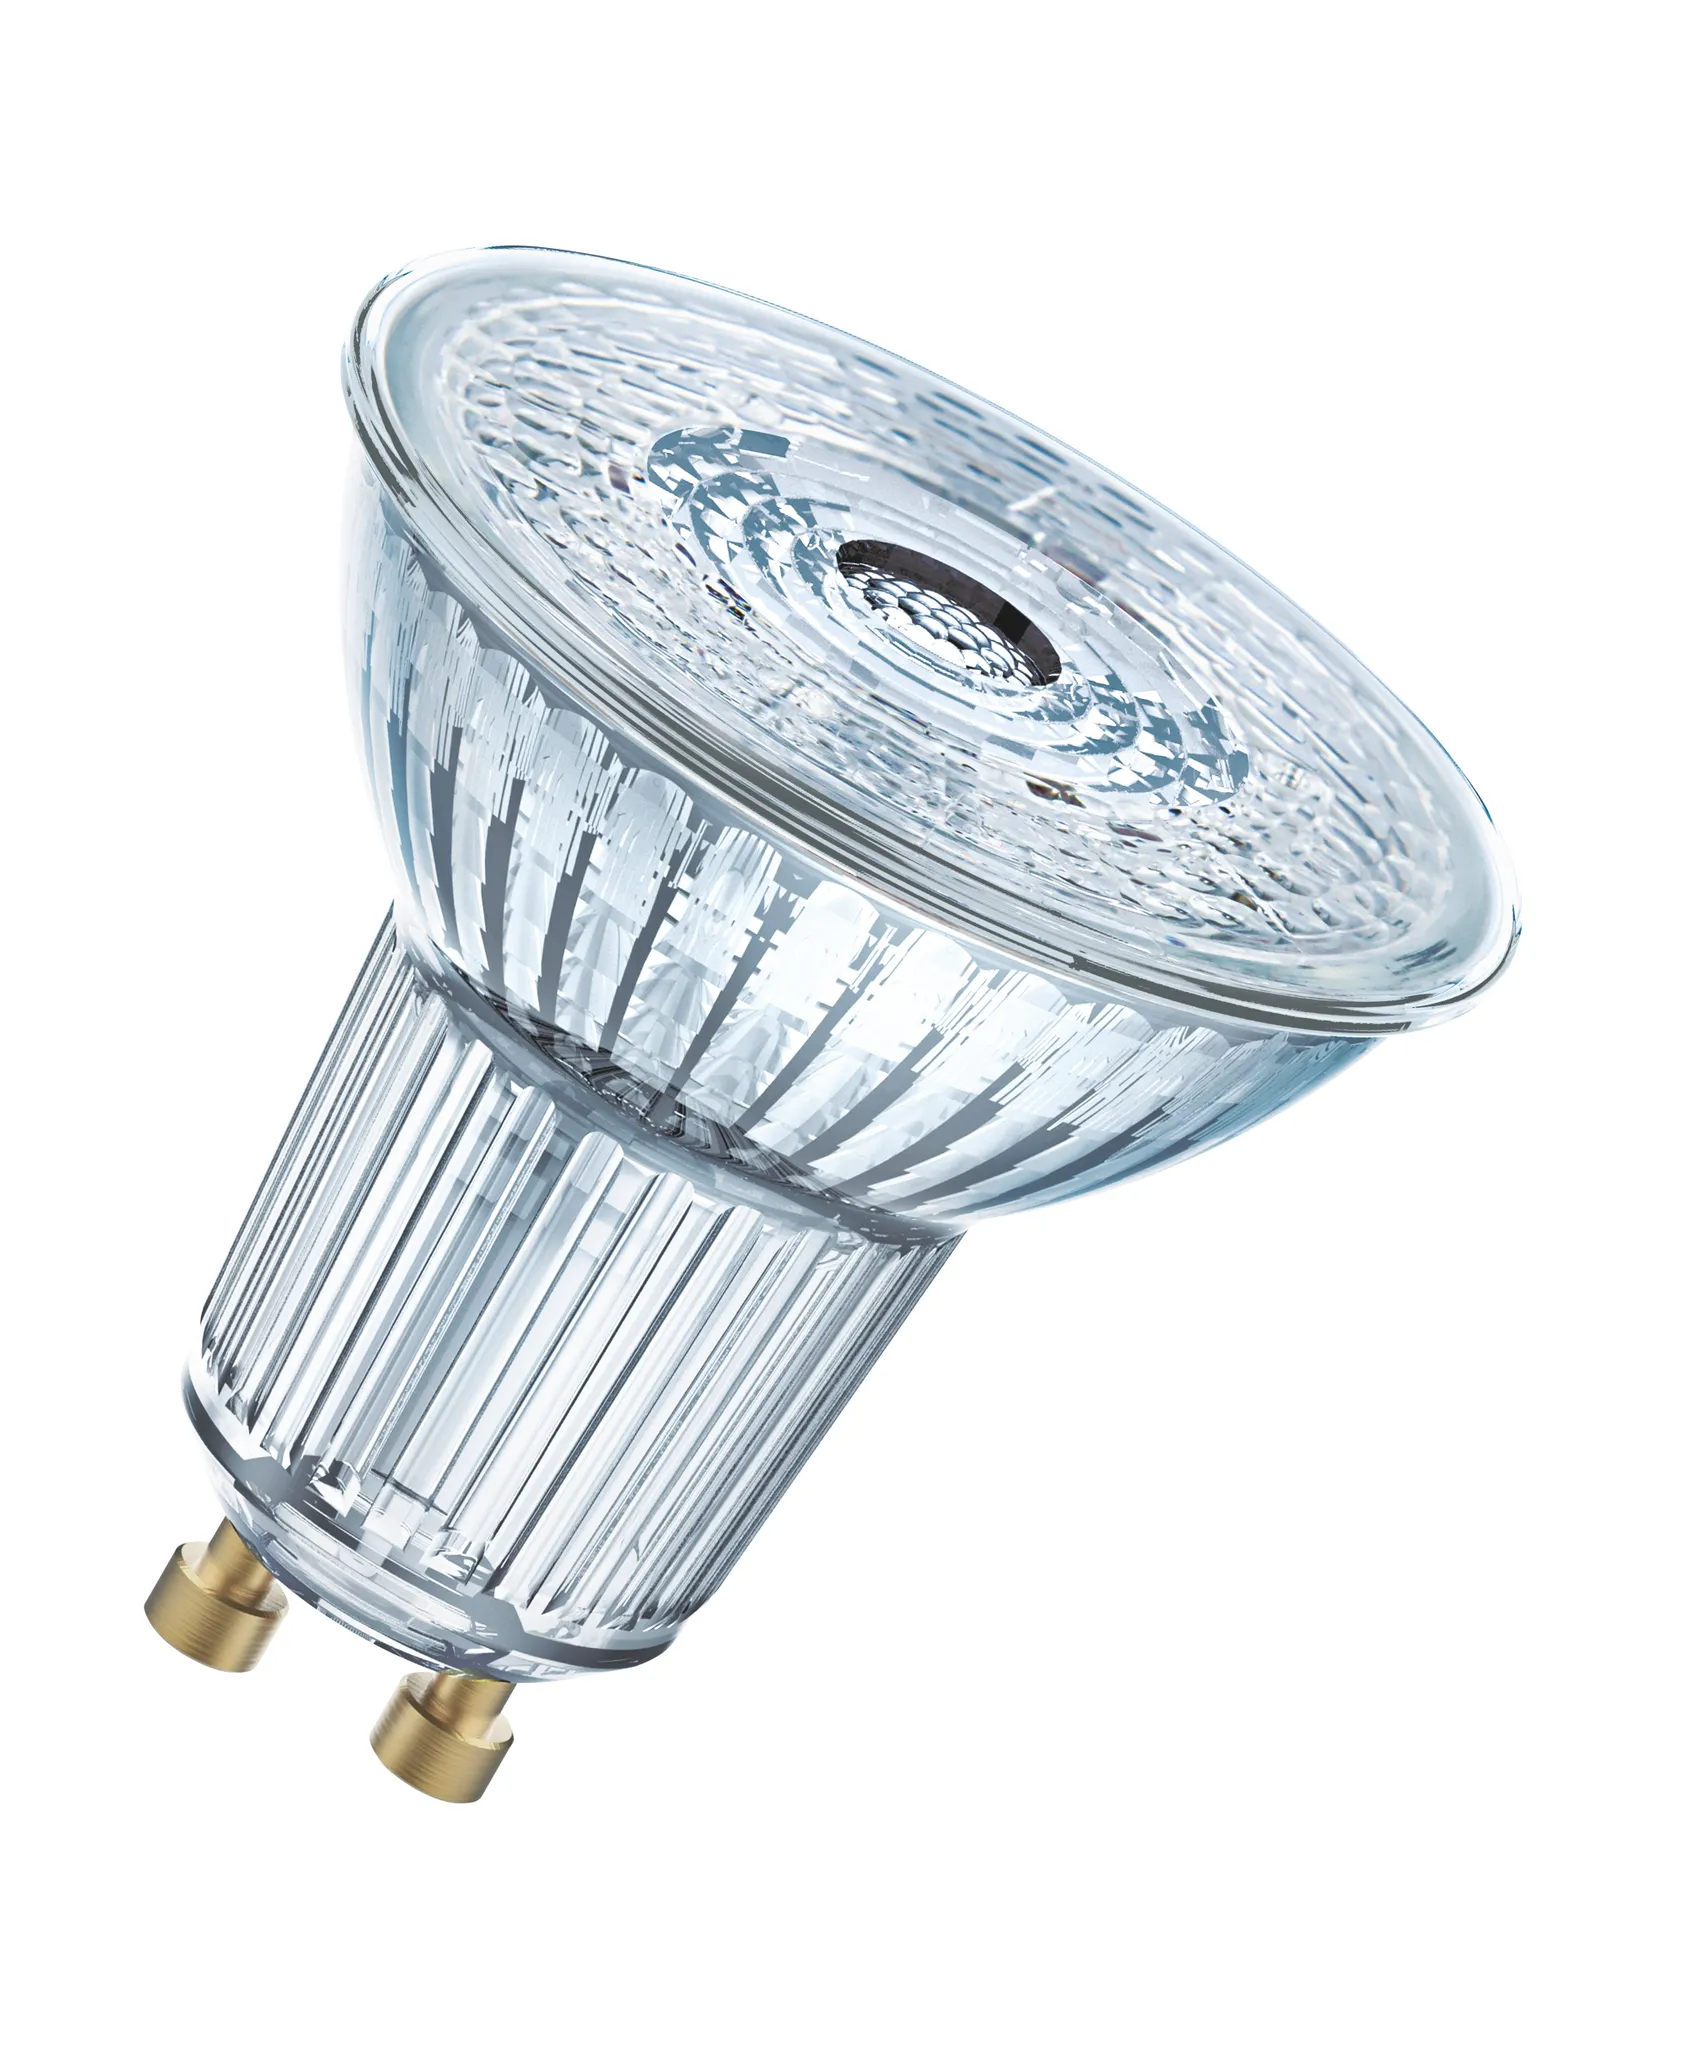 10x 230V GU10 SMD LED 8er 5W=50W Warmweiß Kaltweiß Birne Lampe 50mm Hochvolt 5W 